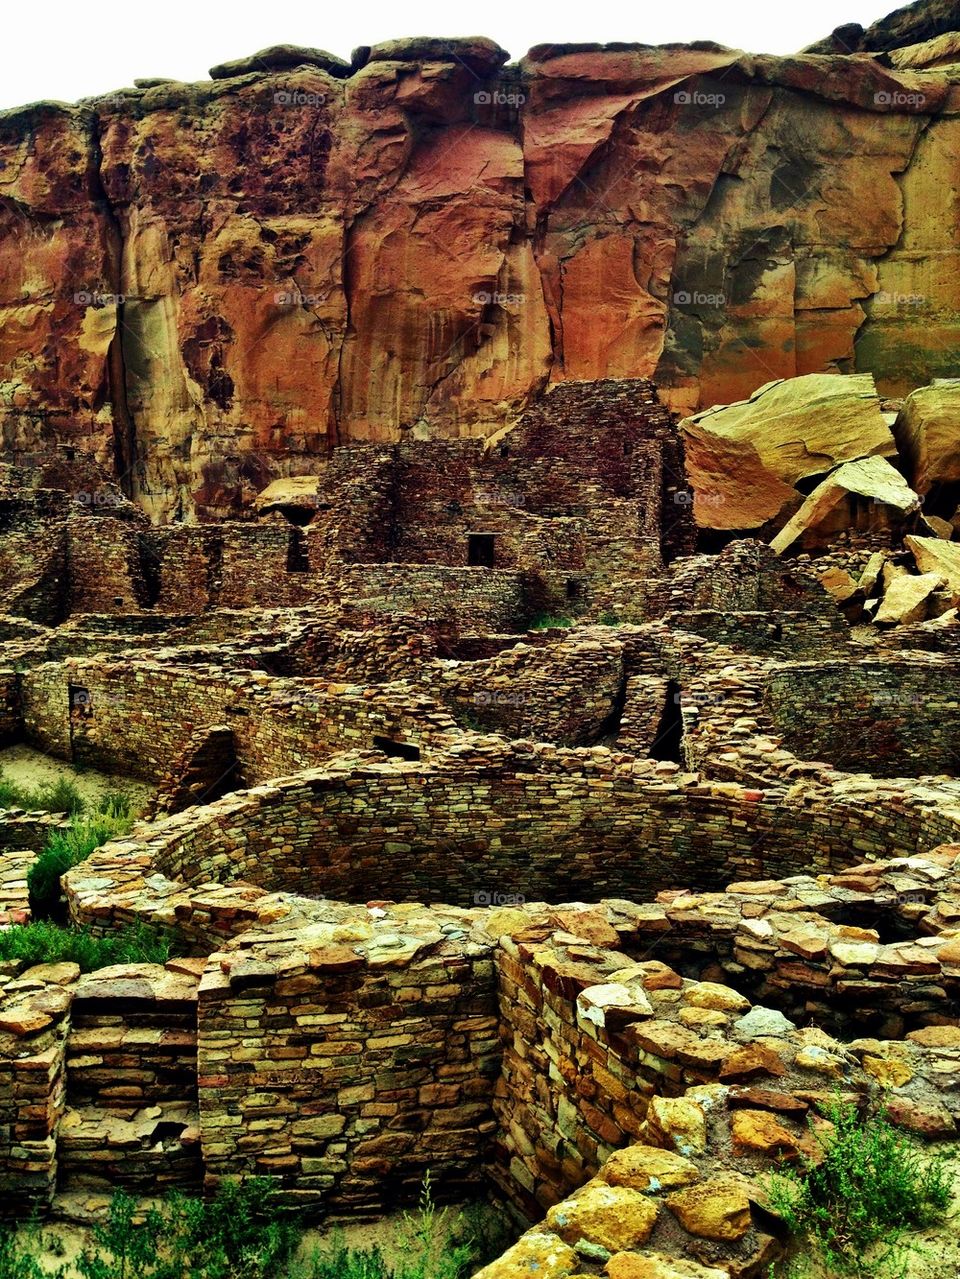 Chaco Canyon Indian Ruins